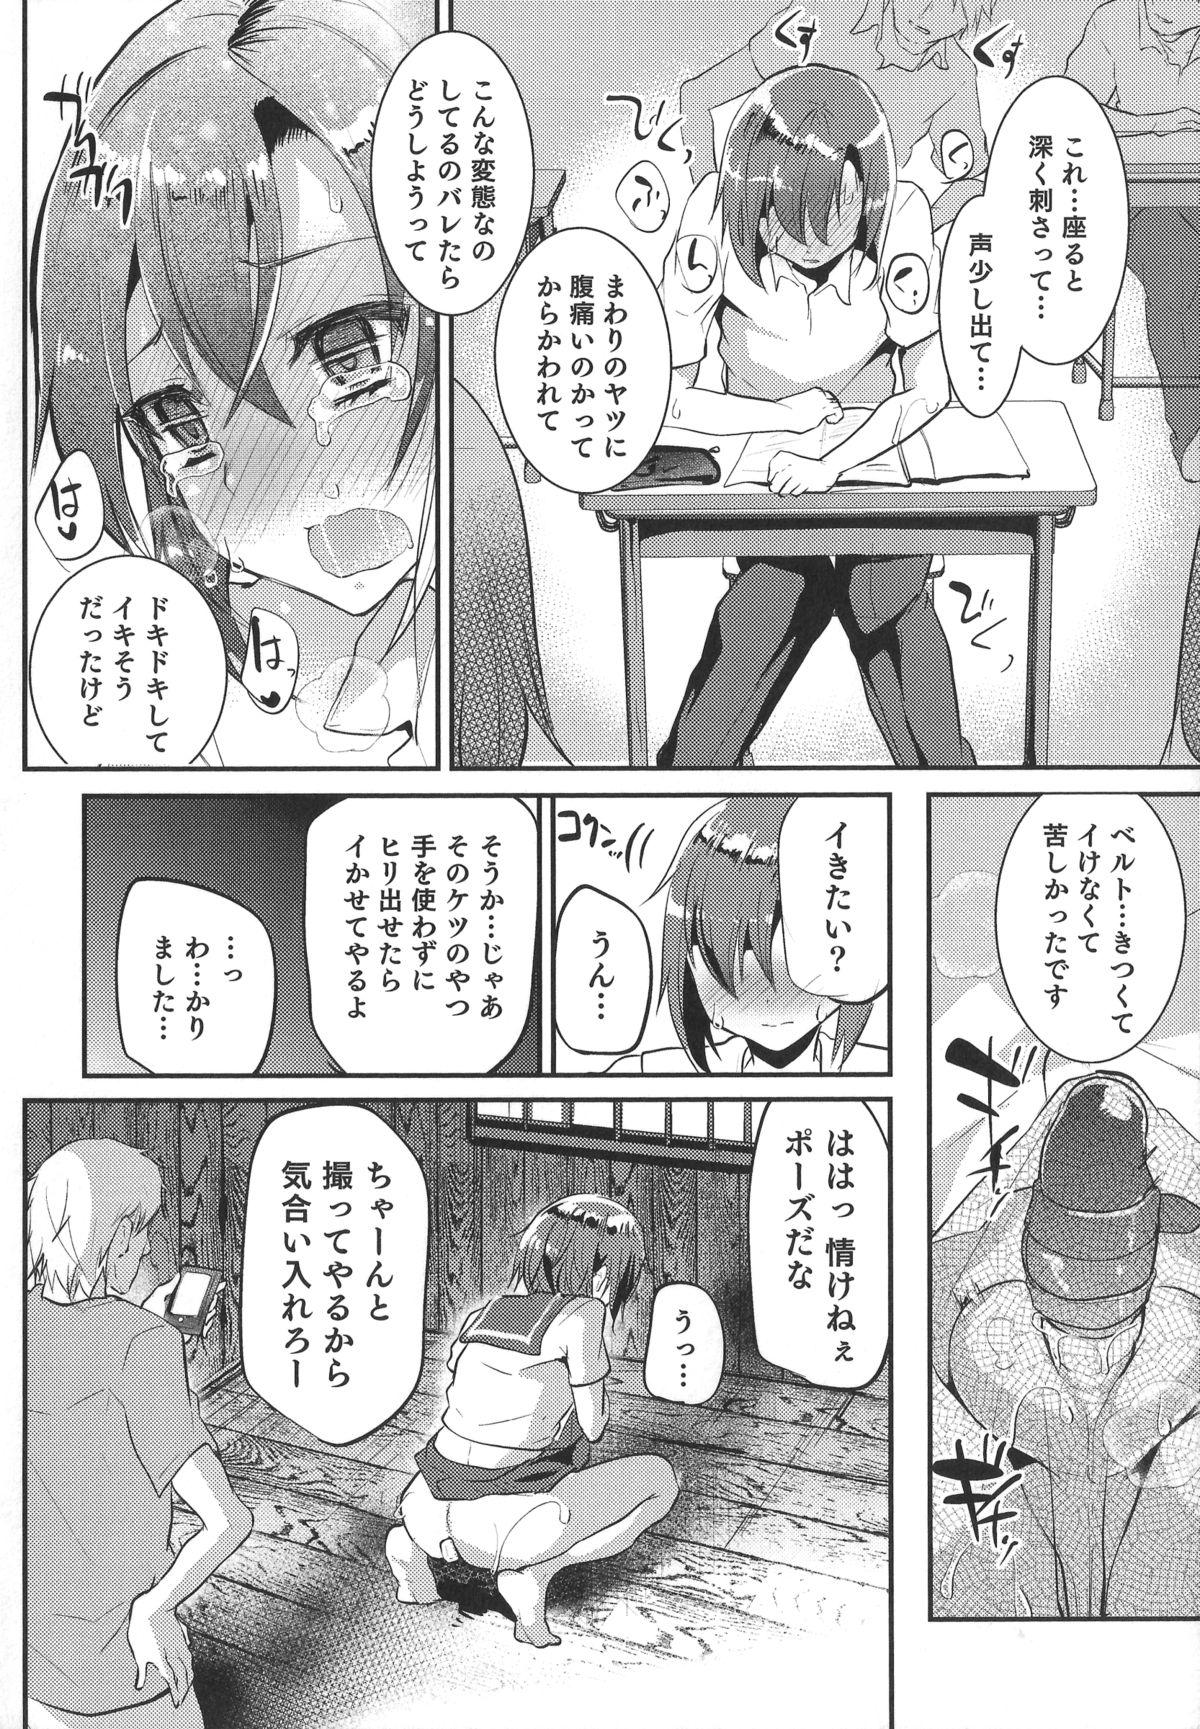 Pounding Otokonoko Heaven's Door 1 Office - Page 10